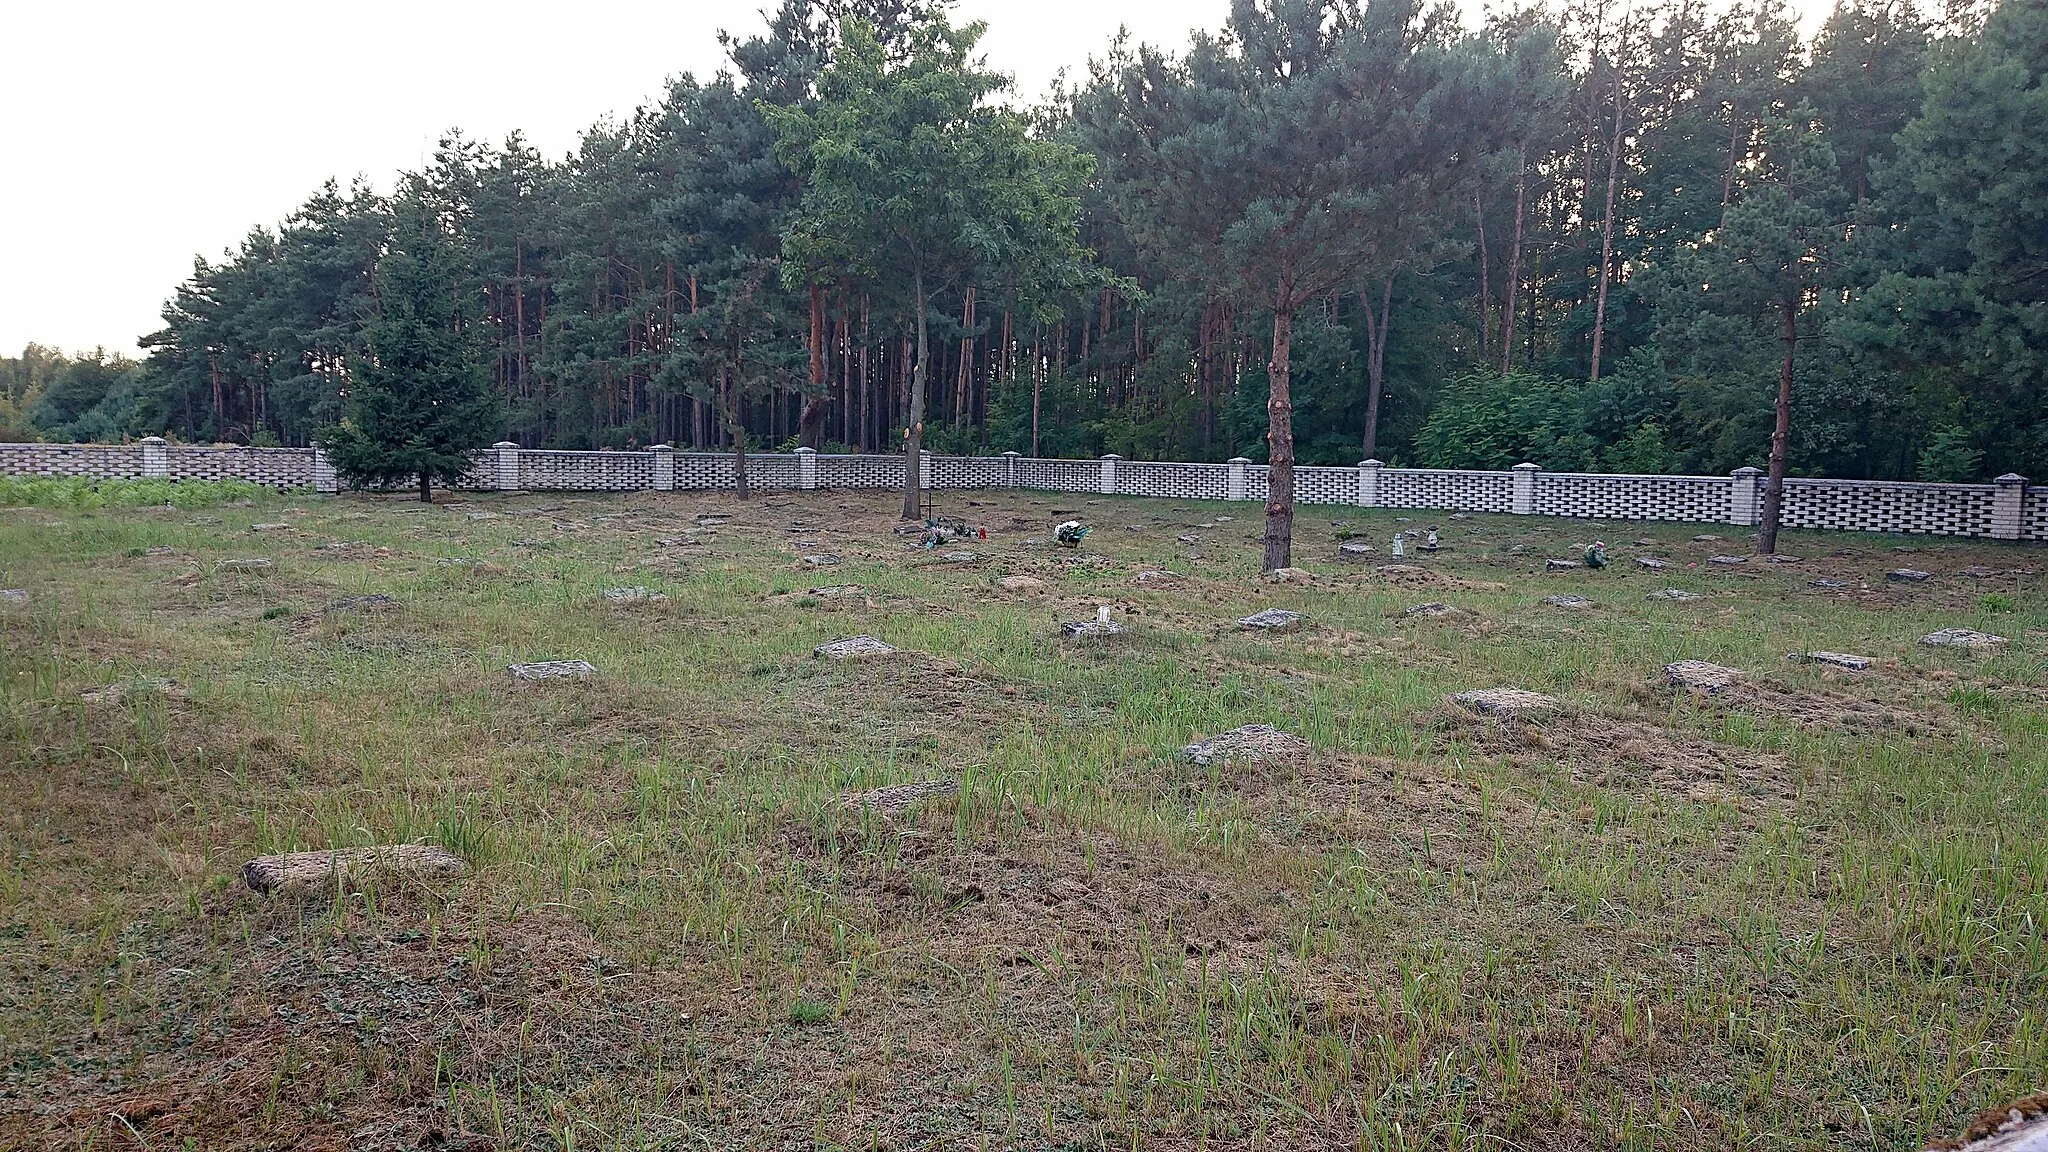 Photo showing: I world war cemetery in Budy Rządowe, Kurpie region, Poland